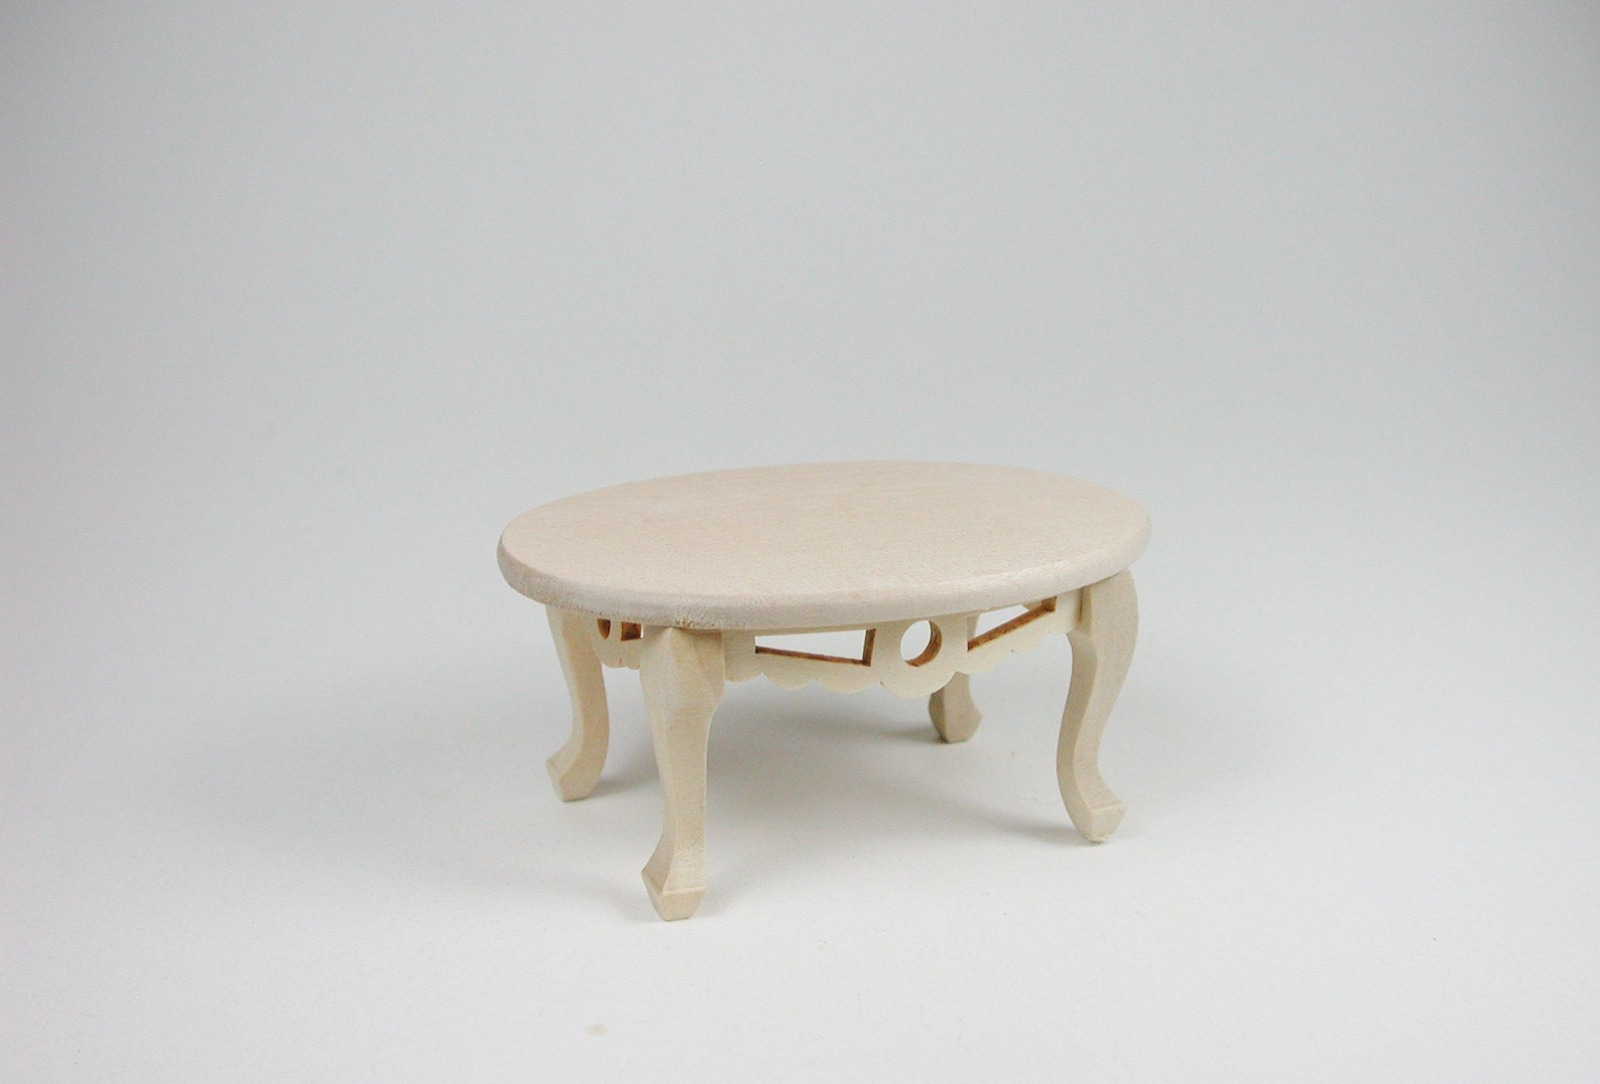 Tisch oval Couchtisch 1:12 Miniatur